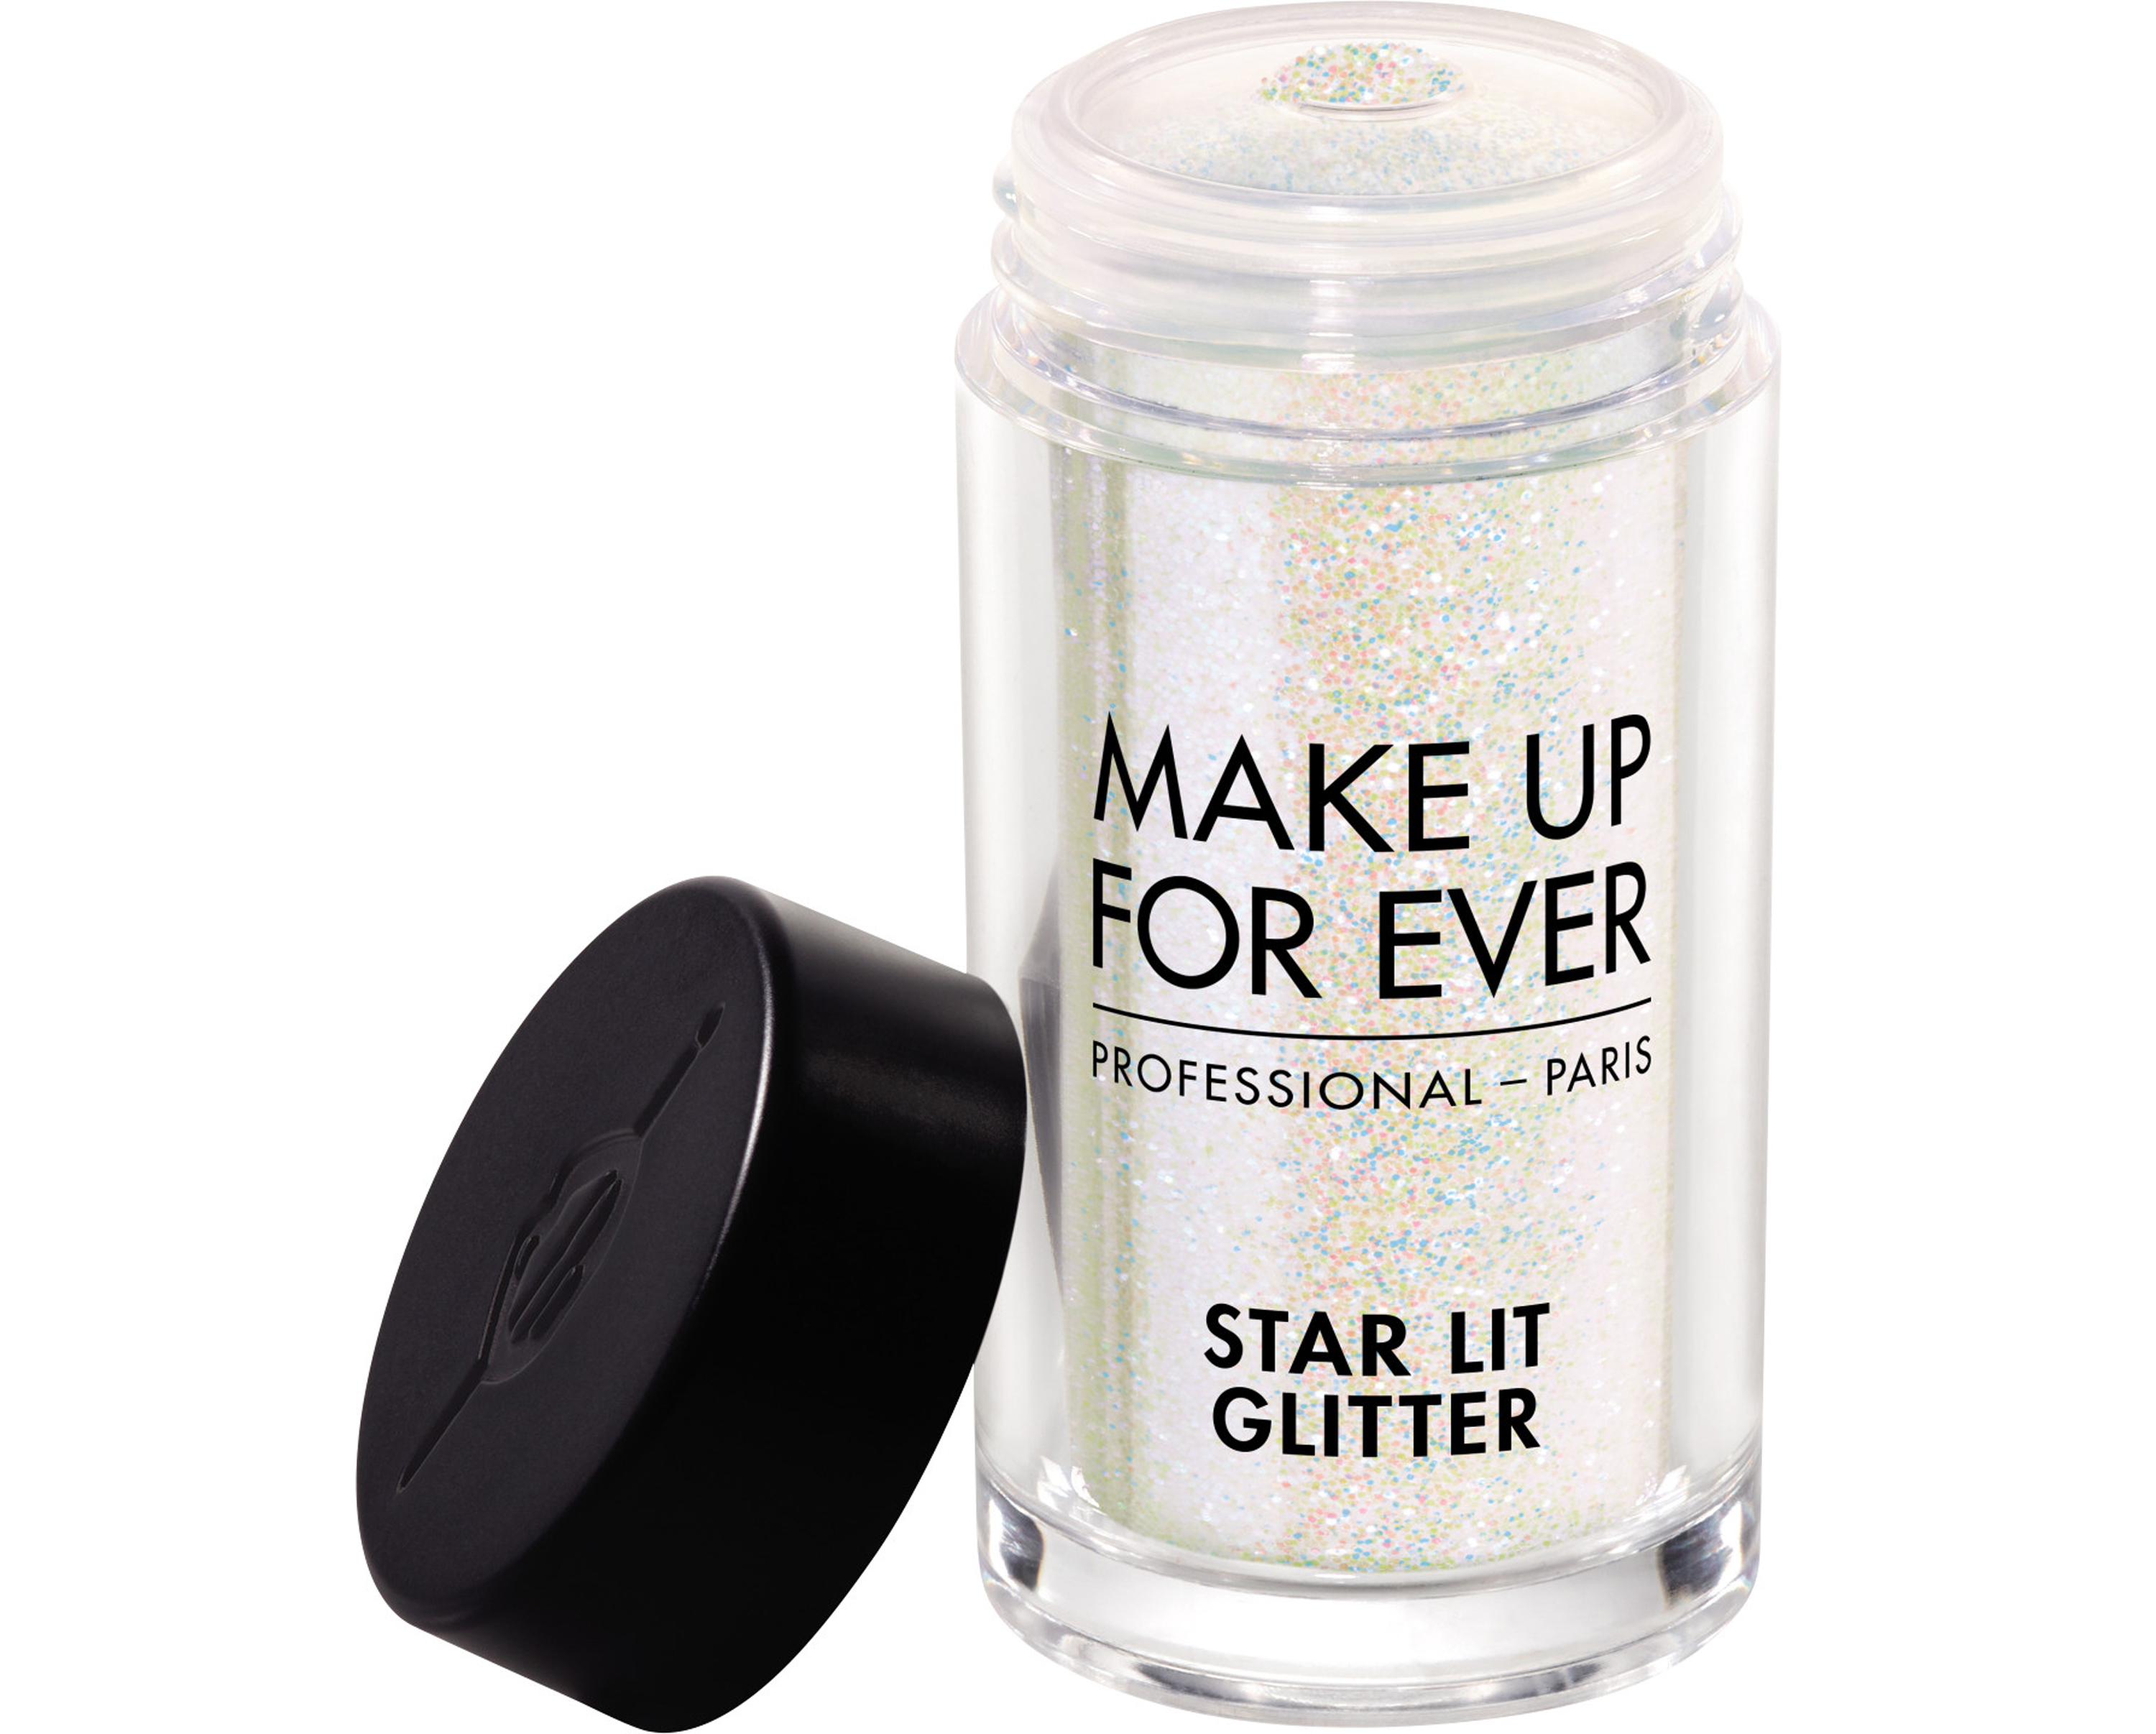 Make Up Forever Star Lit Glitter in Blanc Amethyste